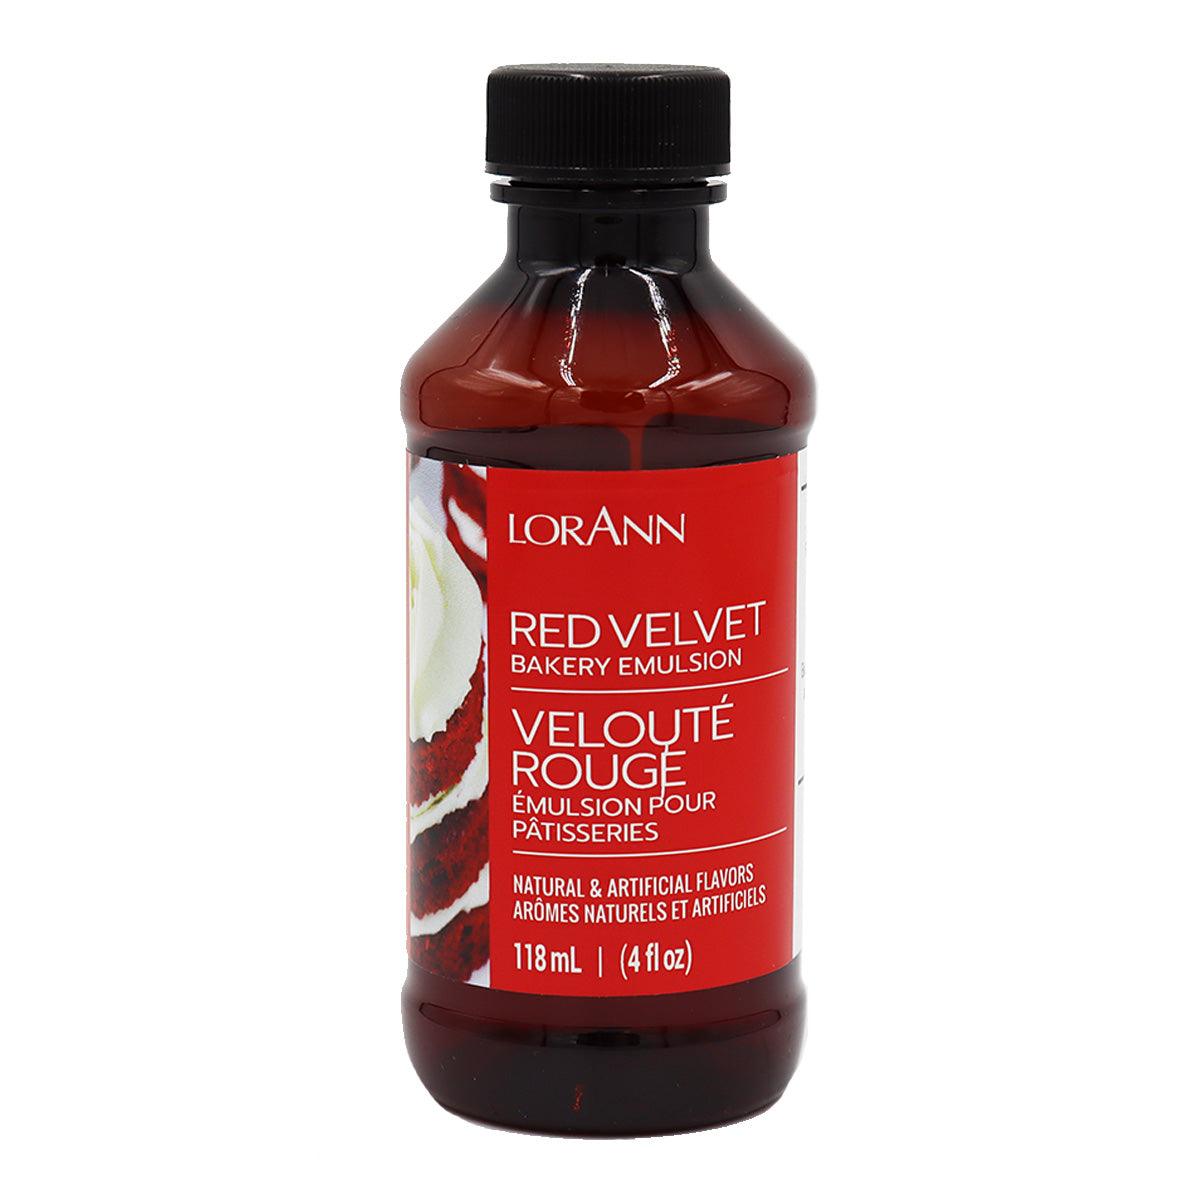 Red Velvet Emulsion 4 fl oz (118ml) - ViaCheff.com